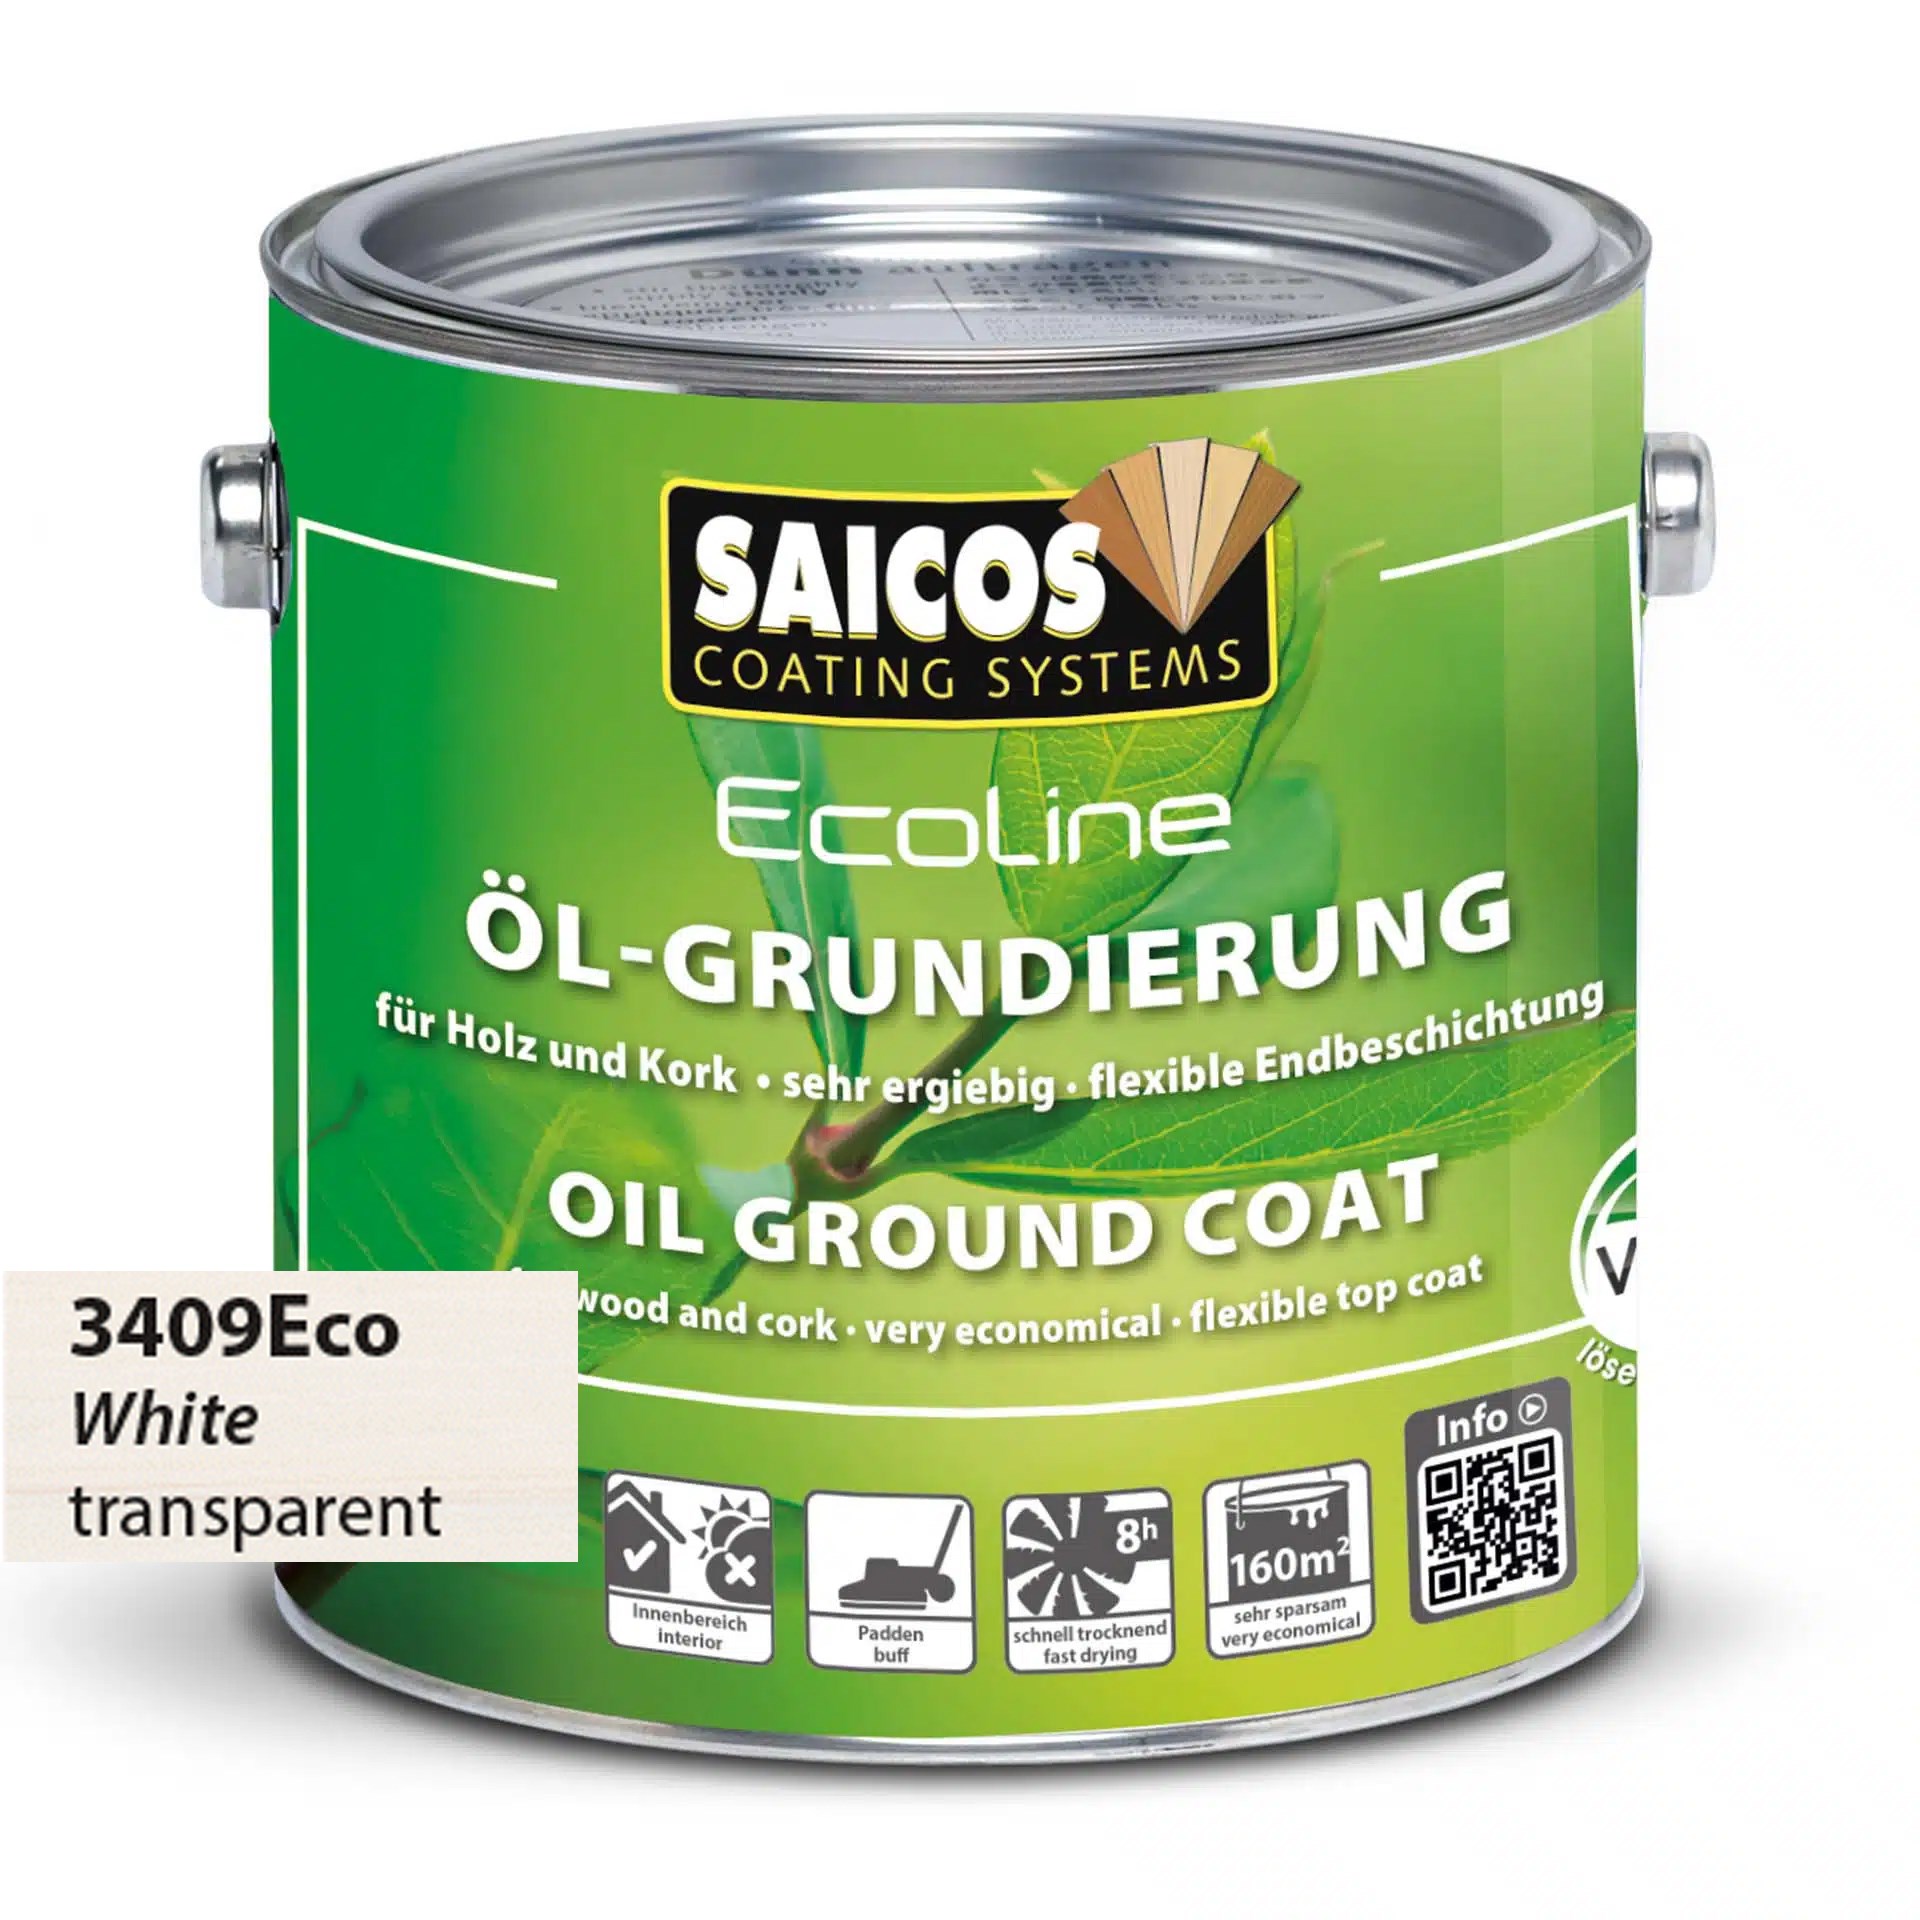 Afbeelding van Saicos Ecoline Oil Ground Coat Wit Transparant (3409) 0.75L